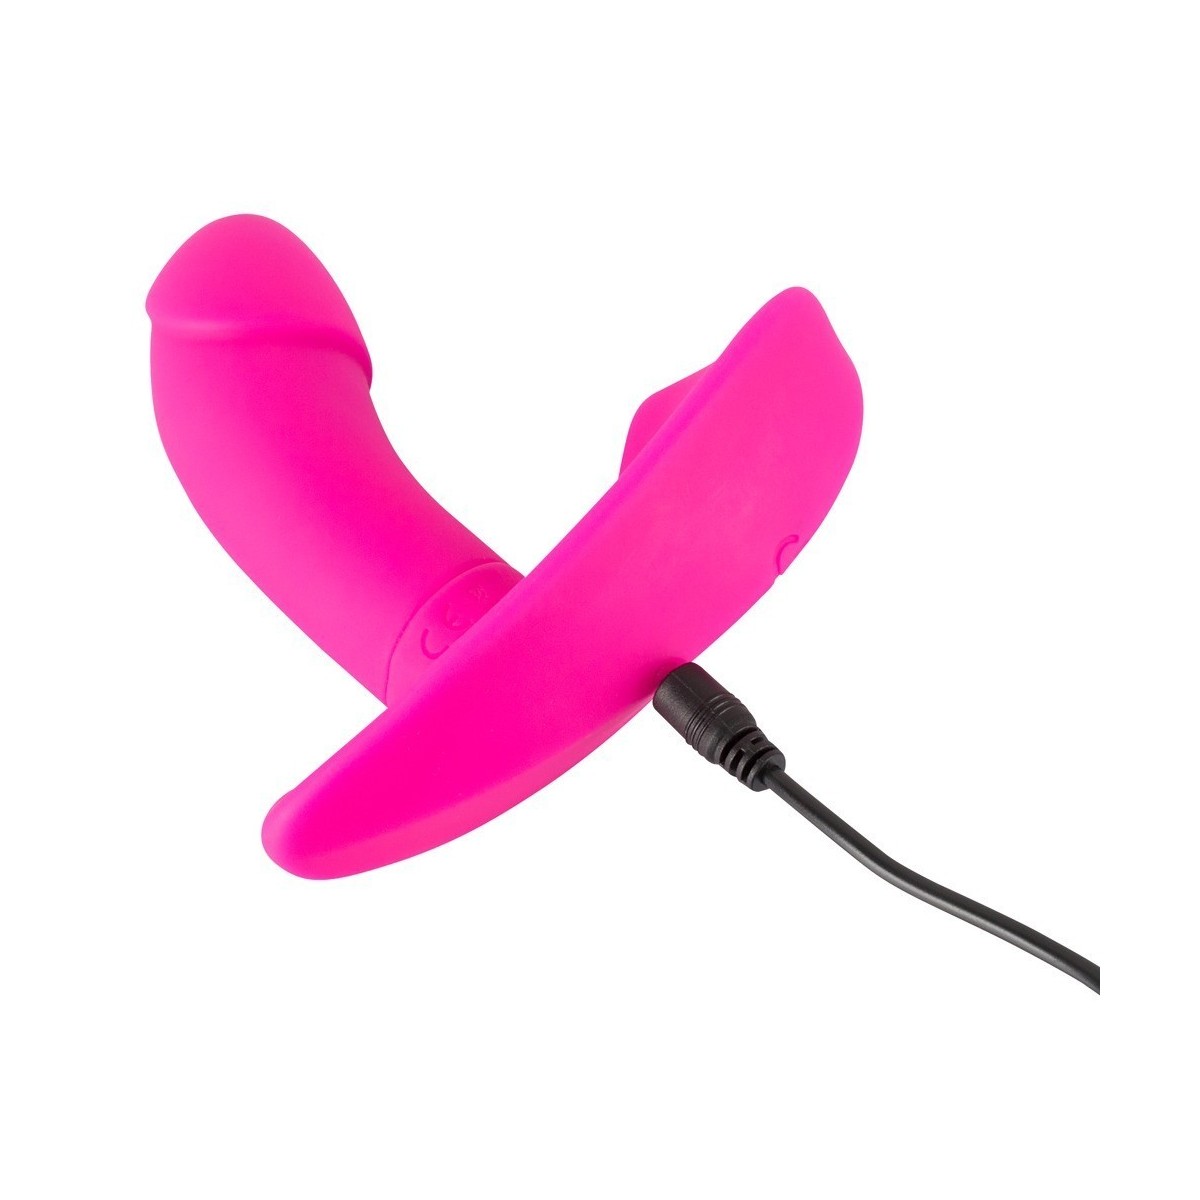 vibratore stimolatore vaginale Remote Controlled Panty Vibrator